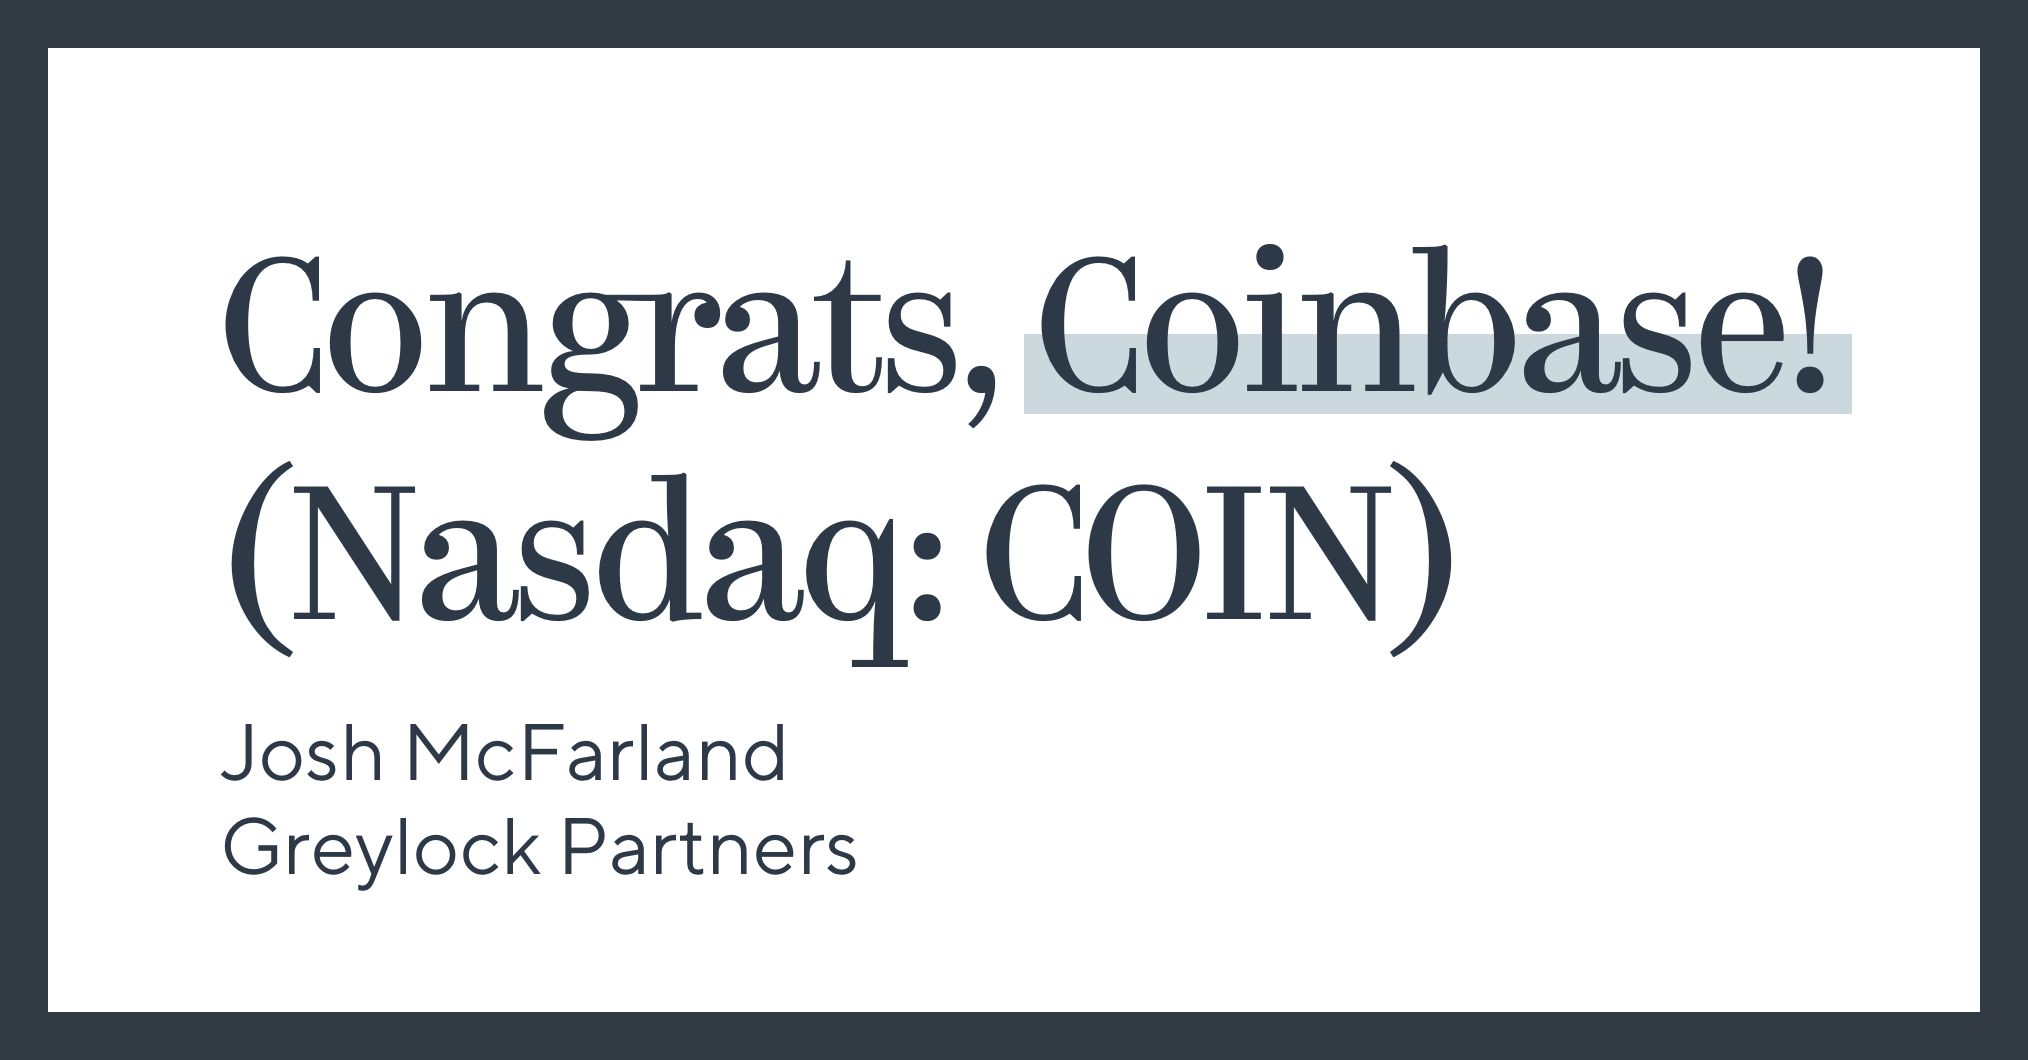 Congrats, Coinbase! (Nasdaq: COIN)